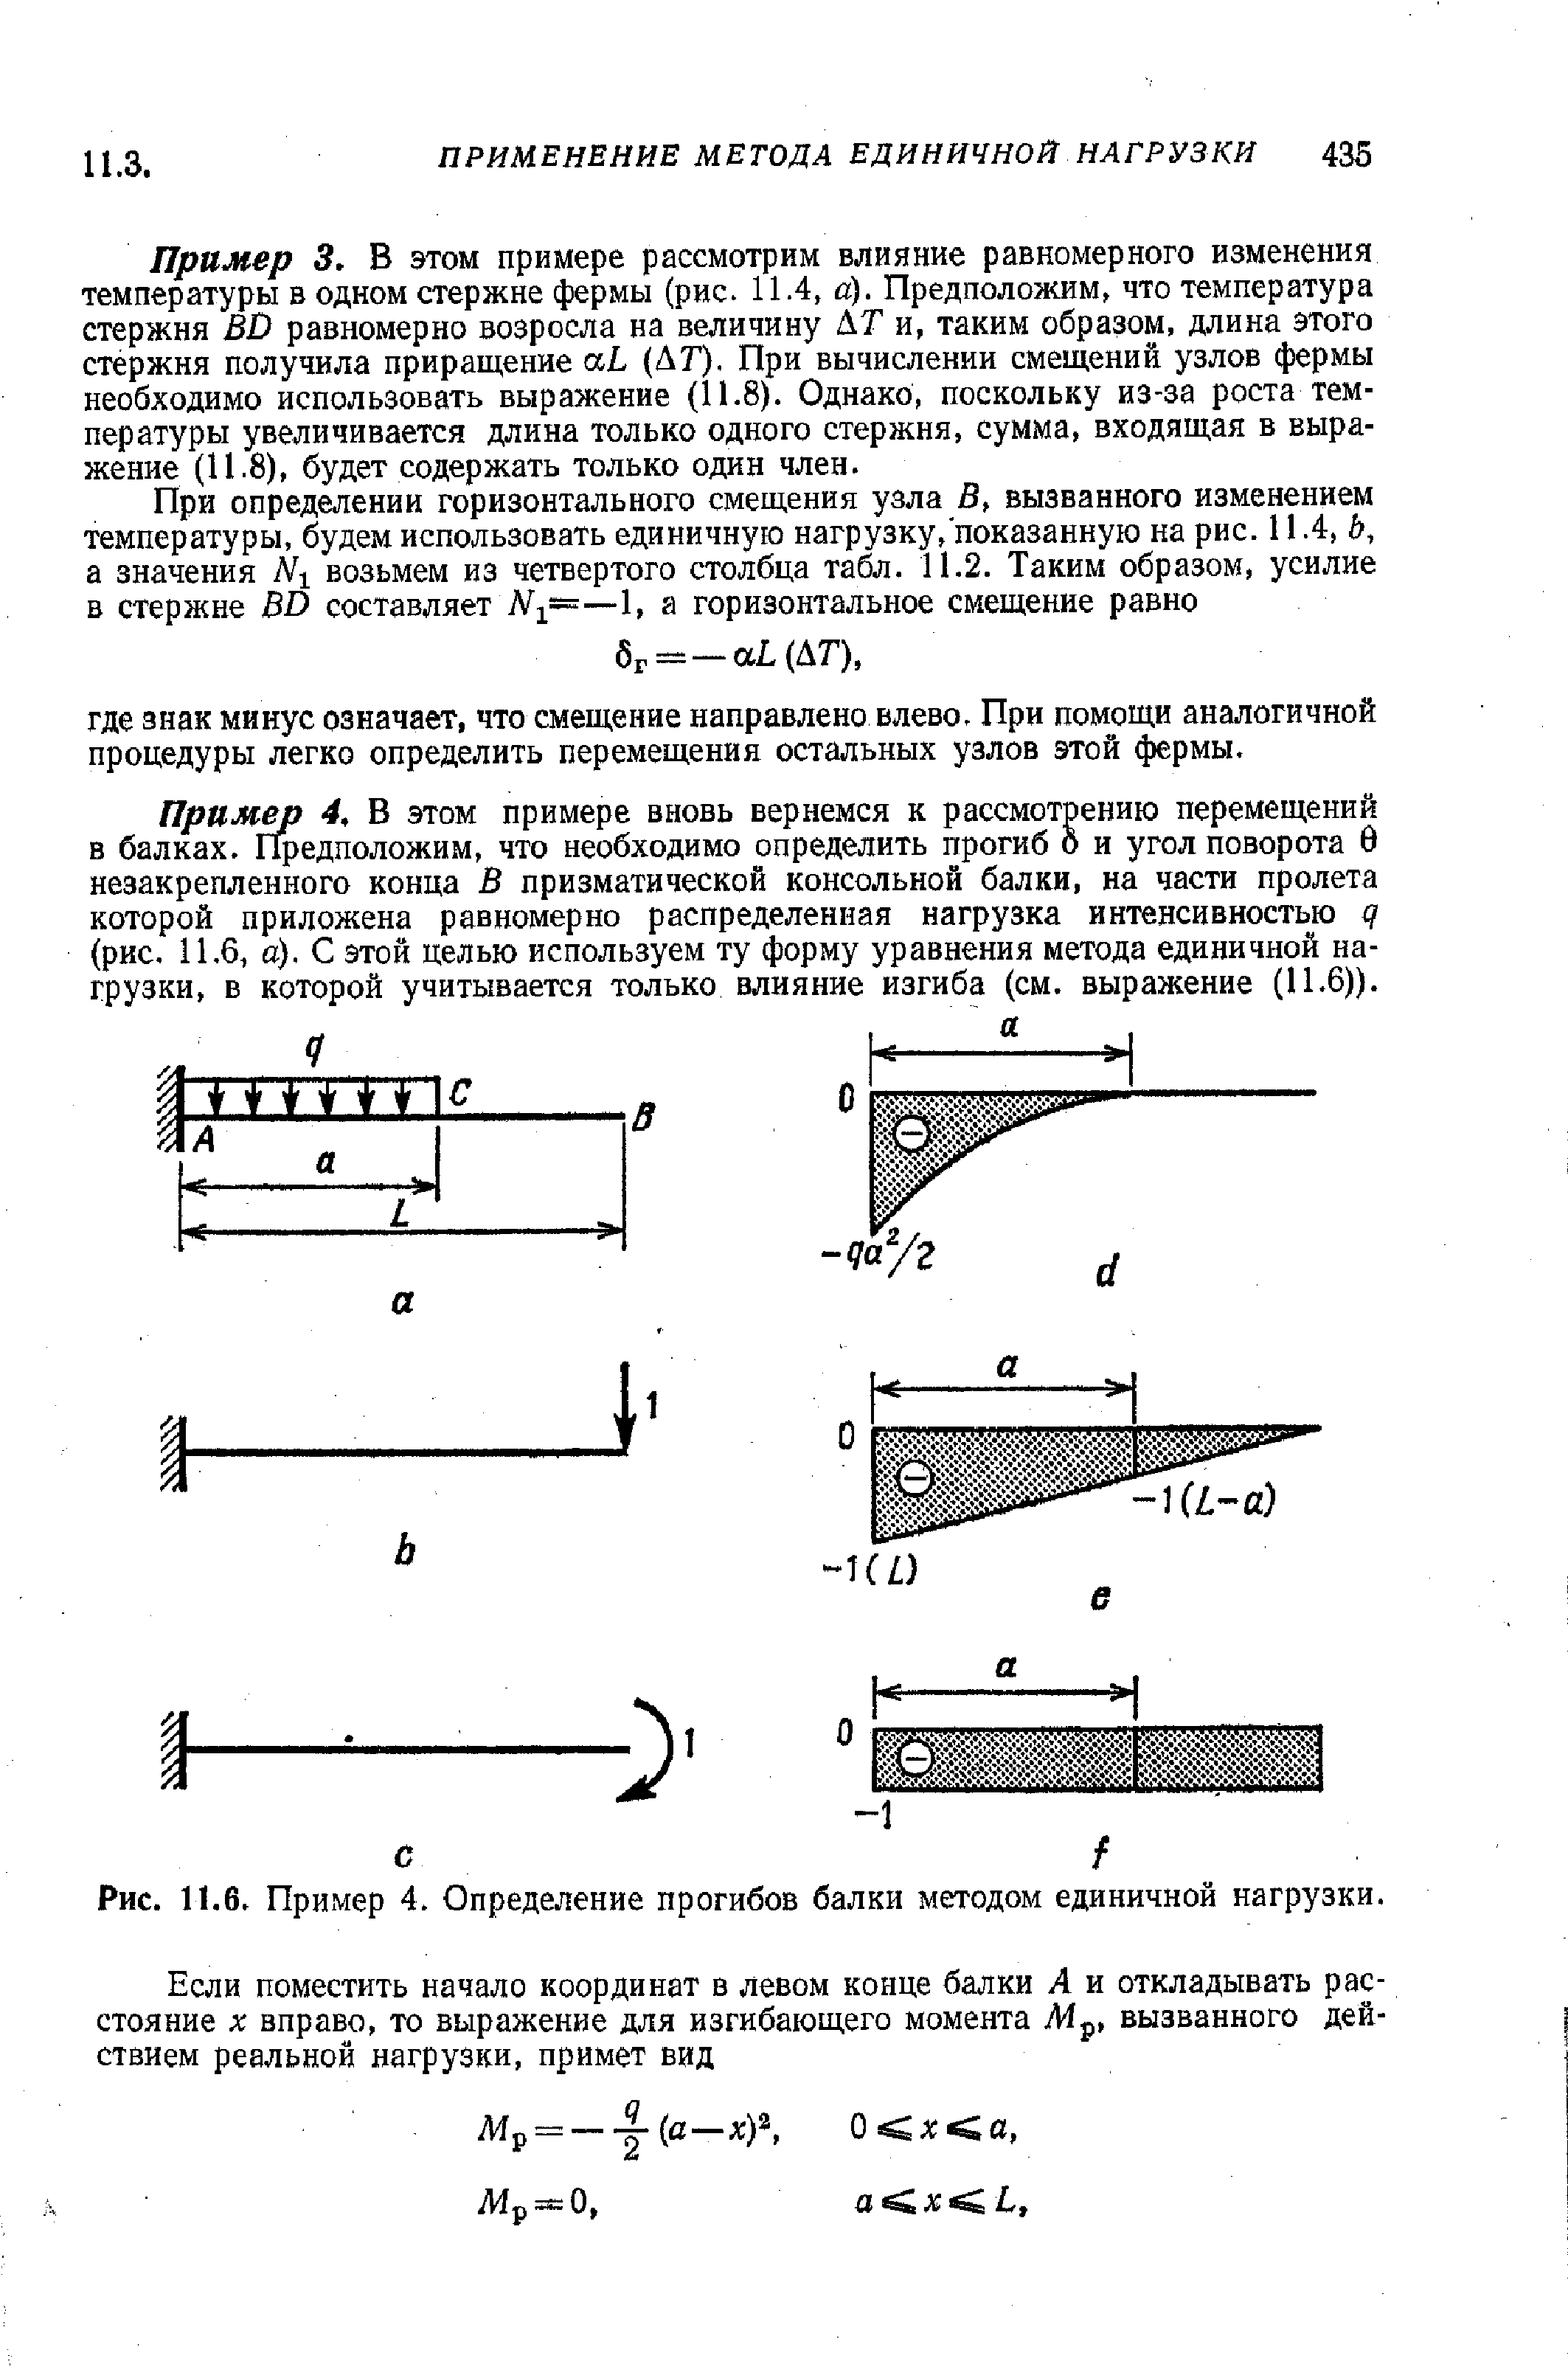 Рис. 11.6, Пример 4. Определение прогибов балки методом единичной нагрузки.
